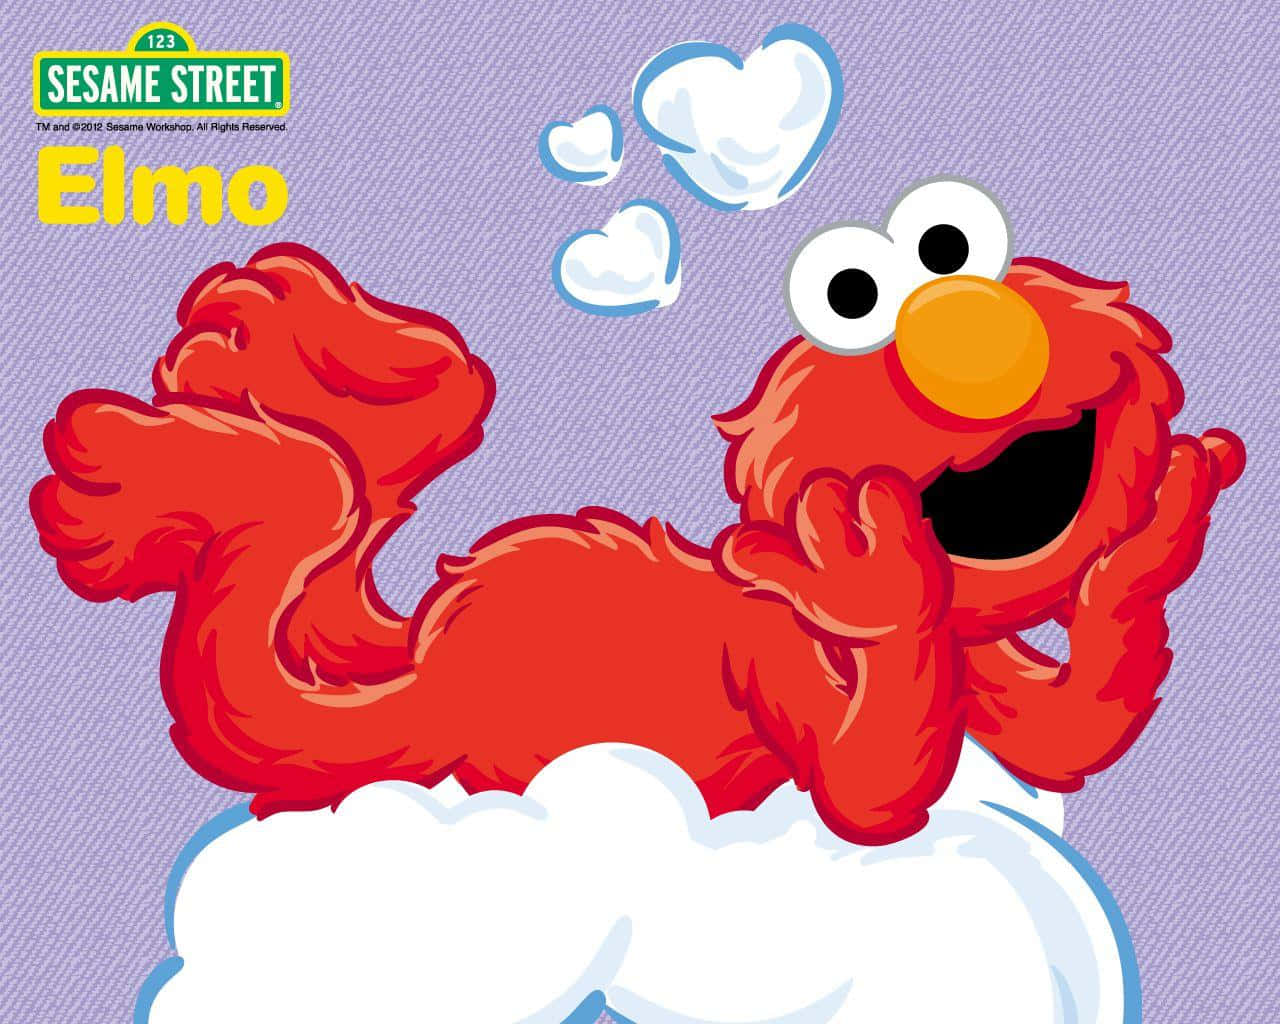 Værmed På Sjovet Med Sesame Street!